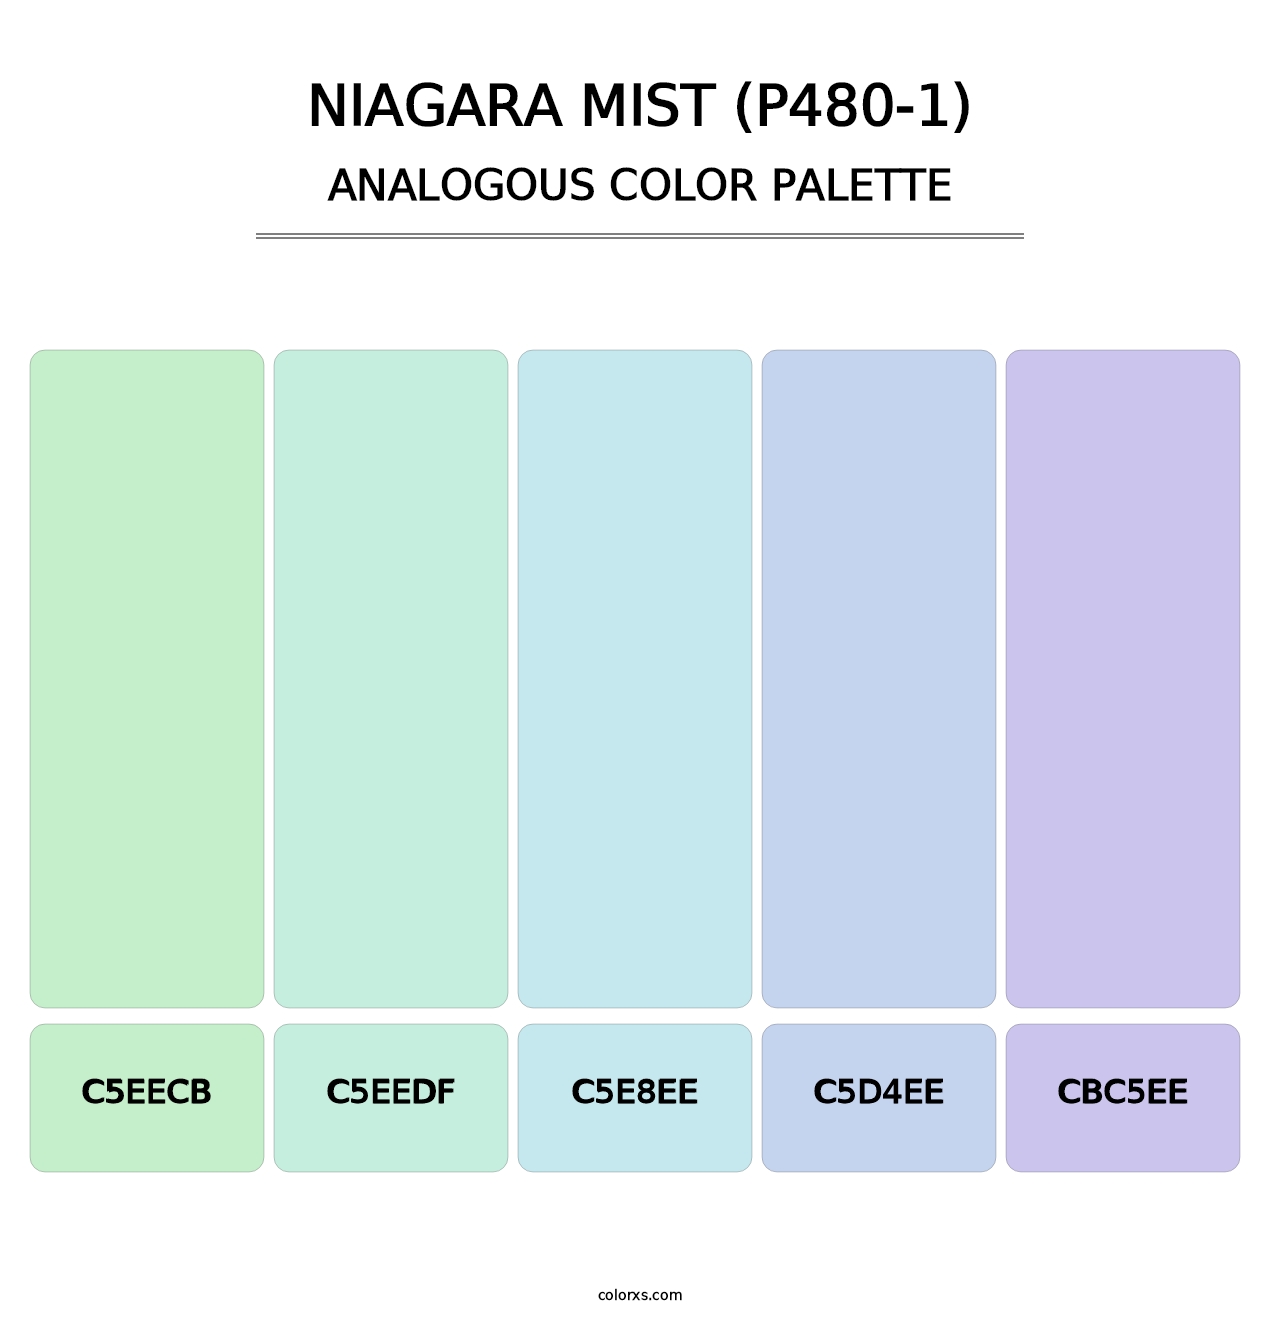 Niagara Mist (P480-1) - Analogous Color Palette